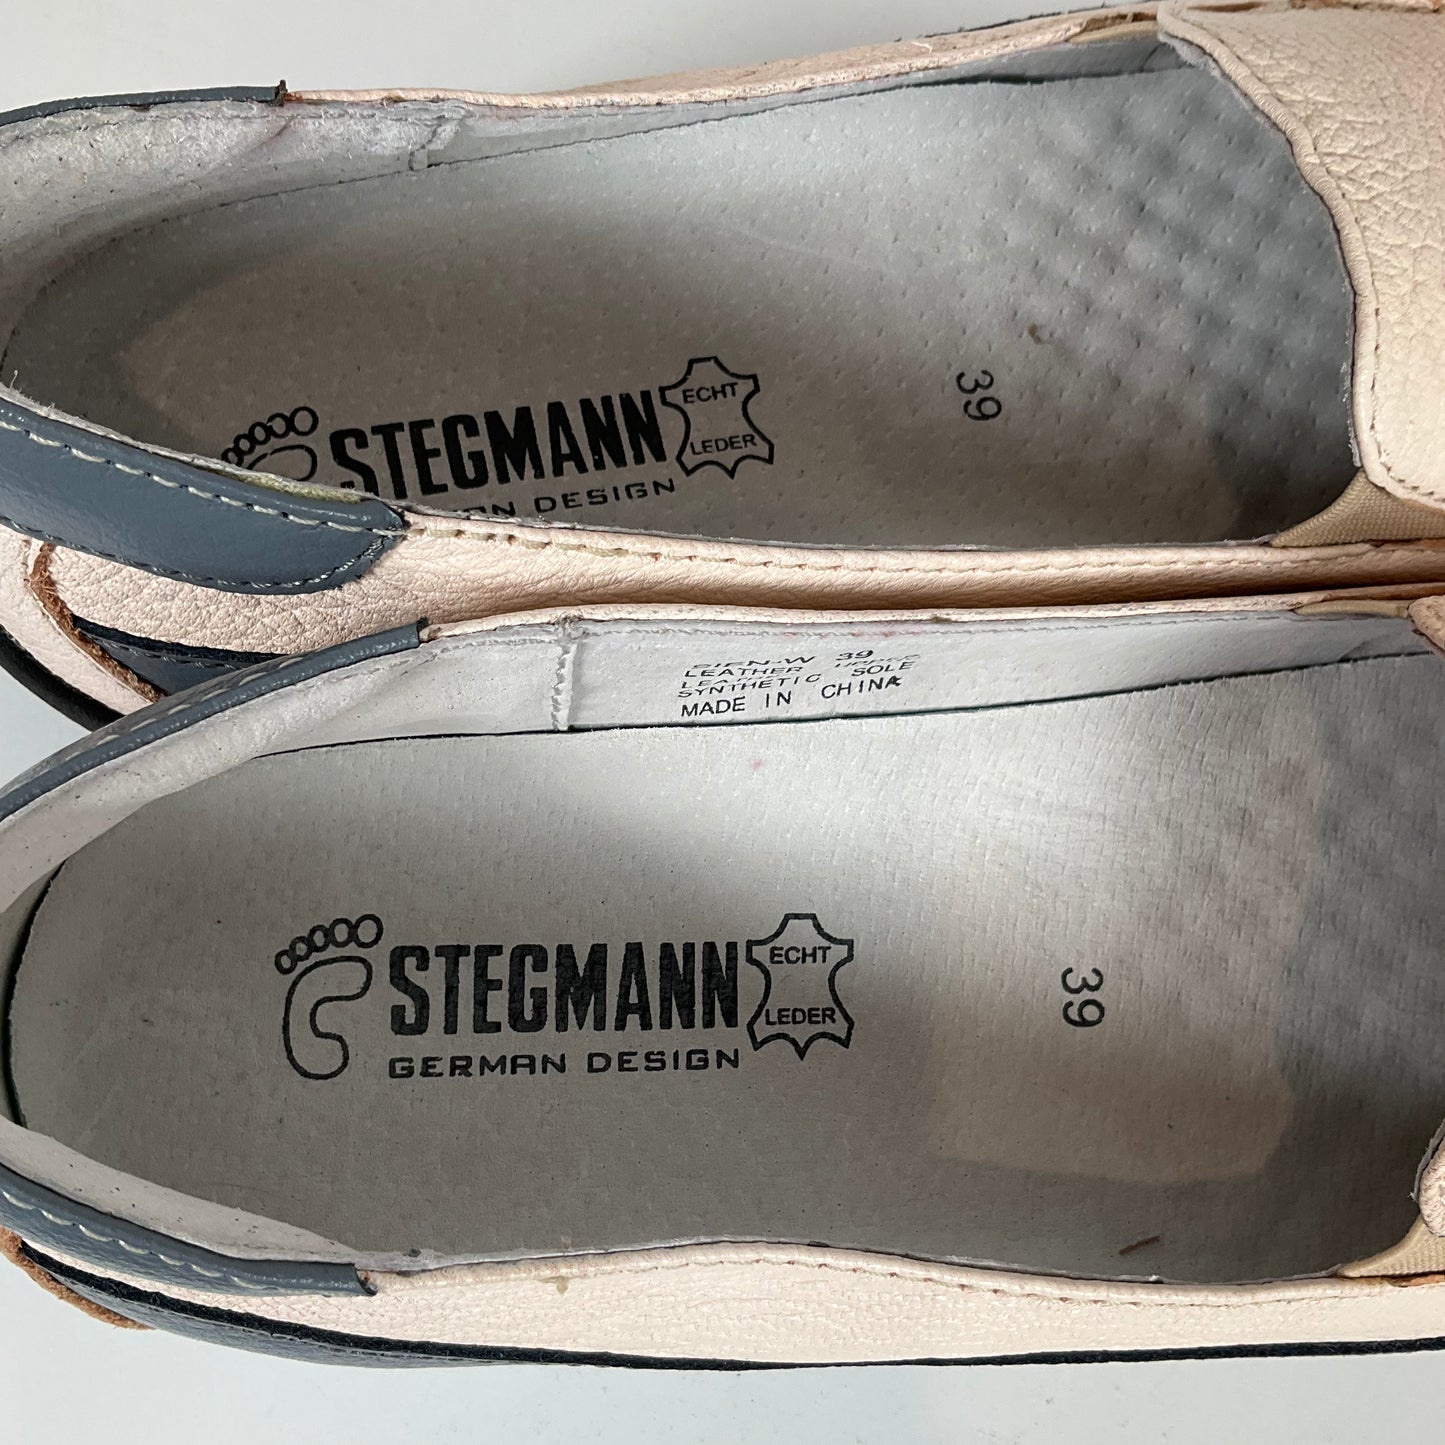 Stegmann - Shoes - Size 6